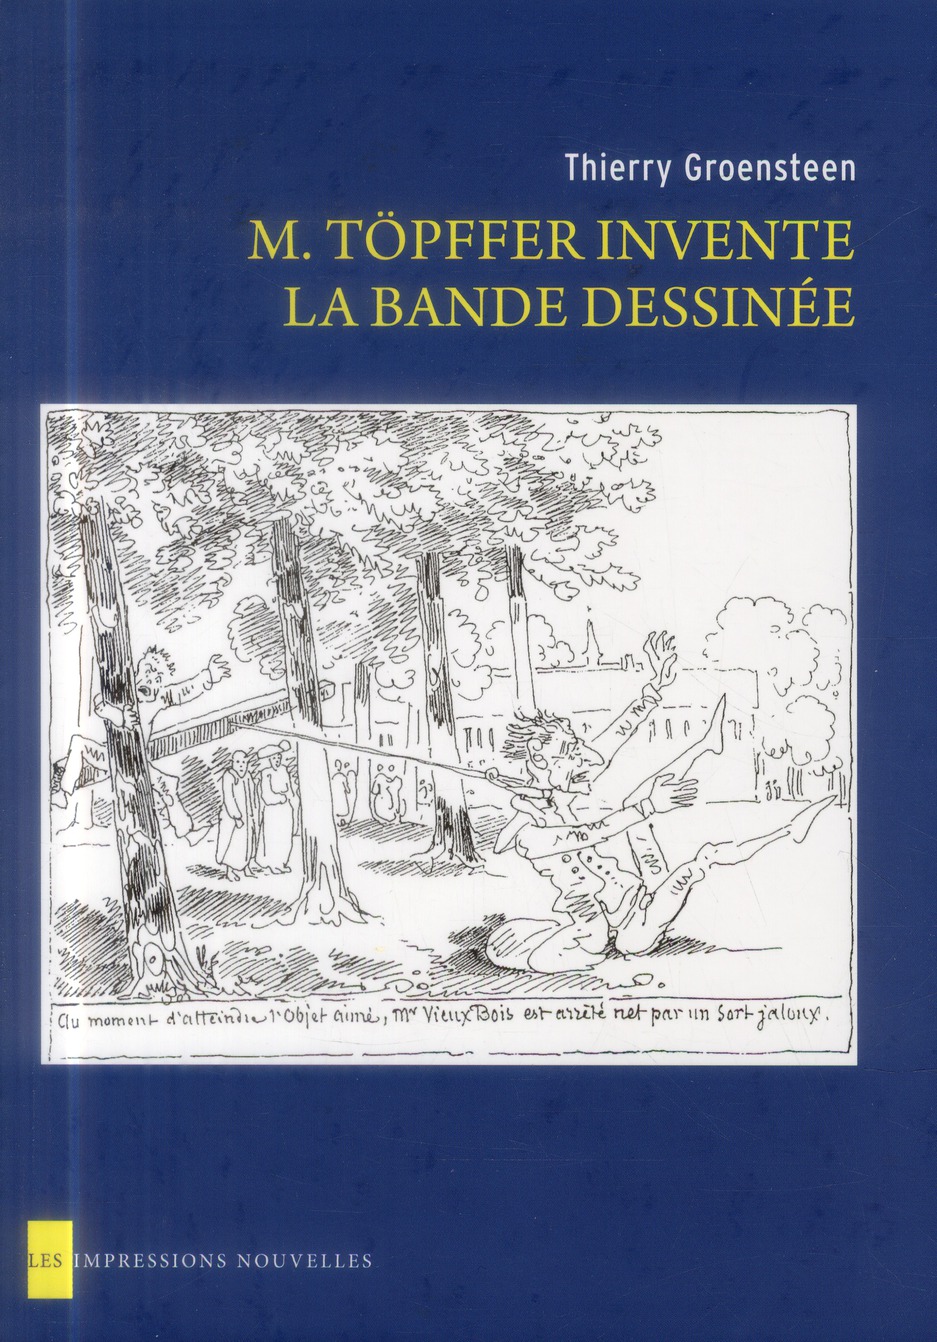 M. TOPFFER INVENTE LA BANDE DESSINEE